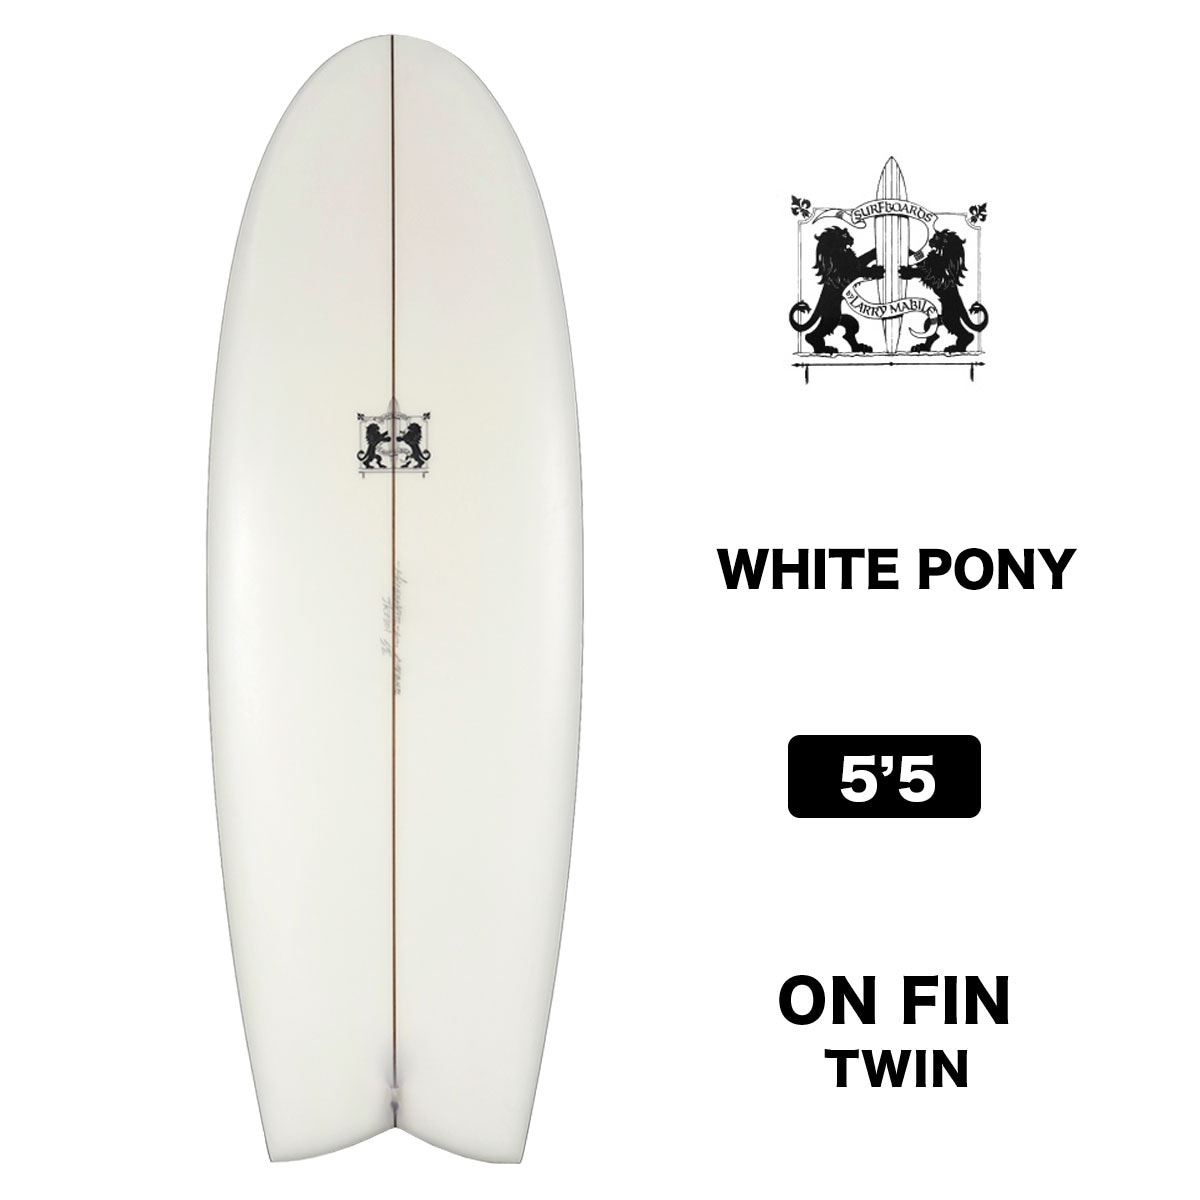 ラリーメイビル サーフボード ホワイト ポニー クラッシック フィッシュ 5'5 サーフィン オンフィン ツインフィン surfboards  LARRY MABILE WHITE PONY FISH 5.5【jk2301】-ジャックオーシャンスポーツ